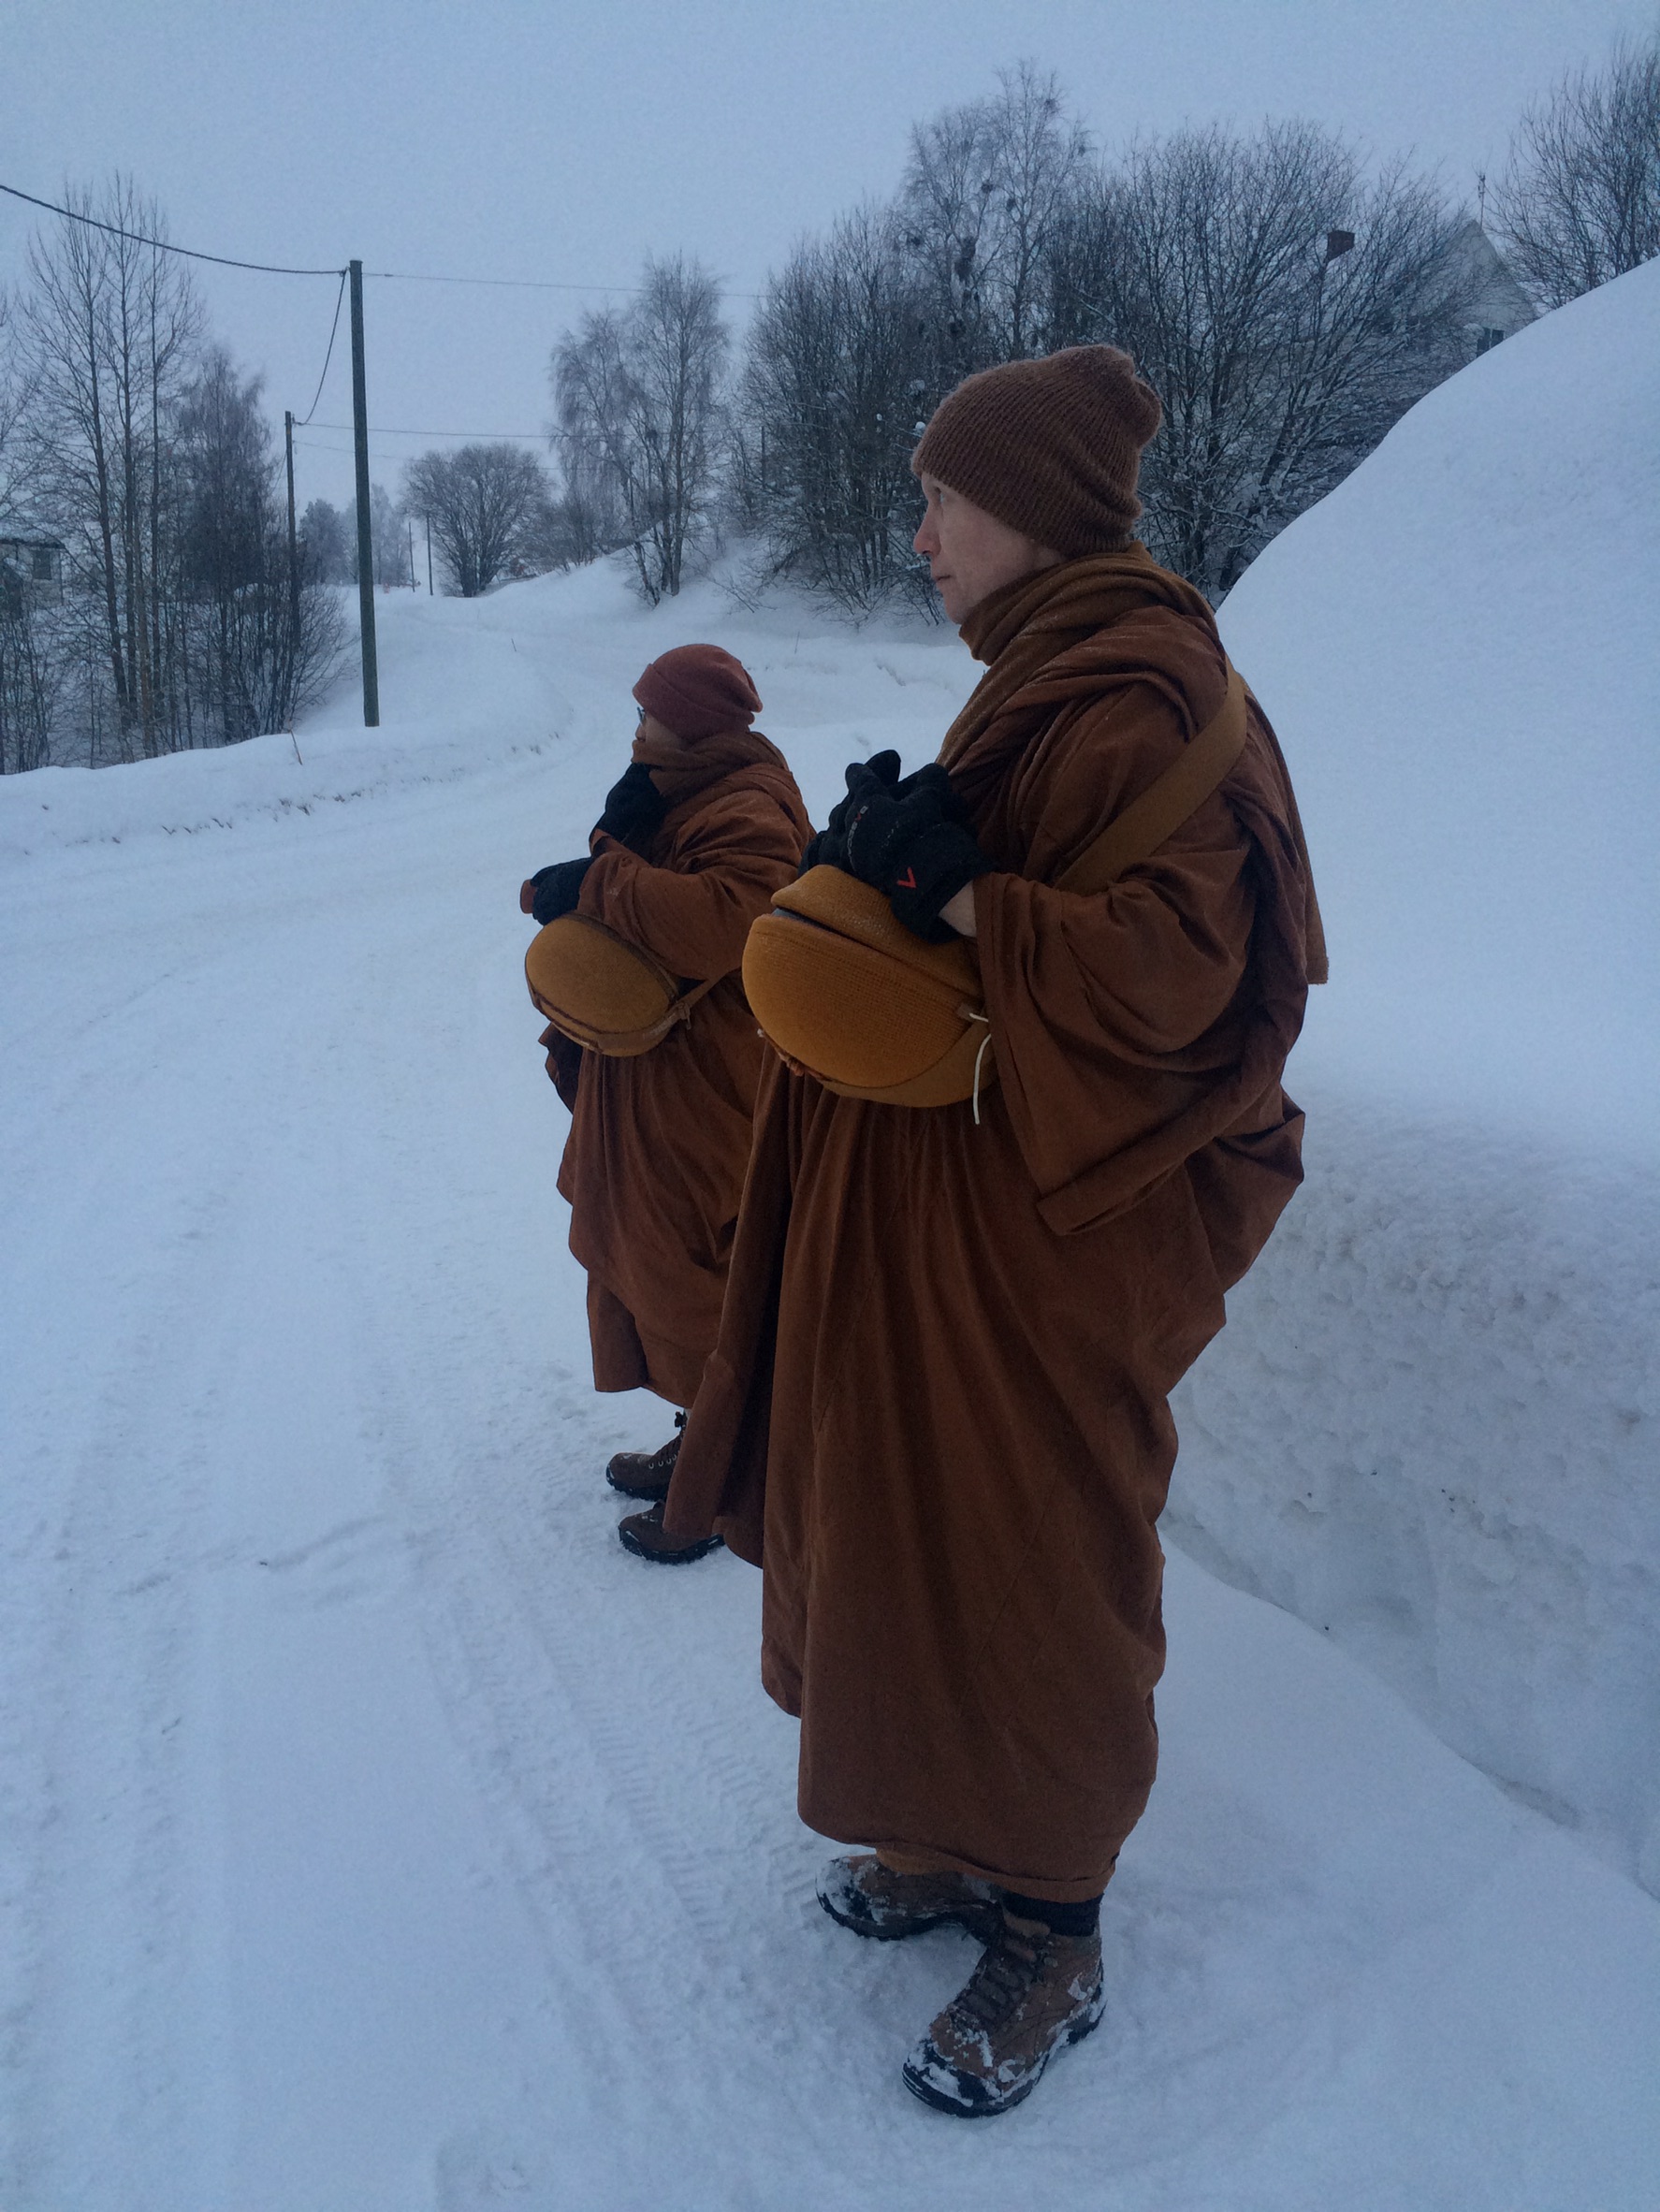 Buddhistmunker på almissevandring